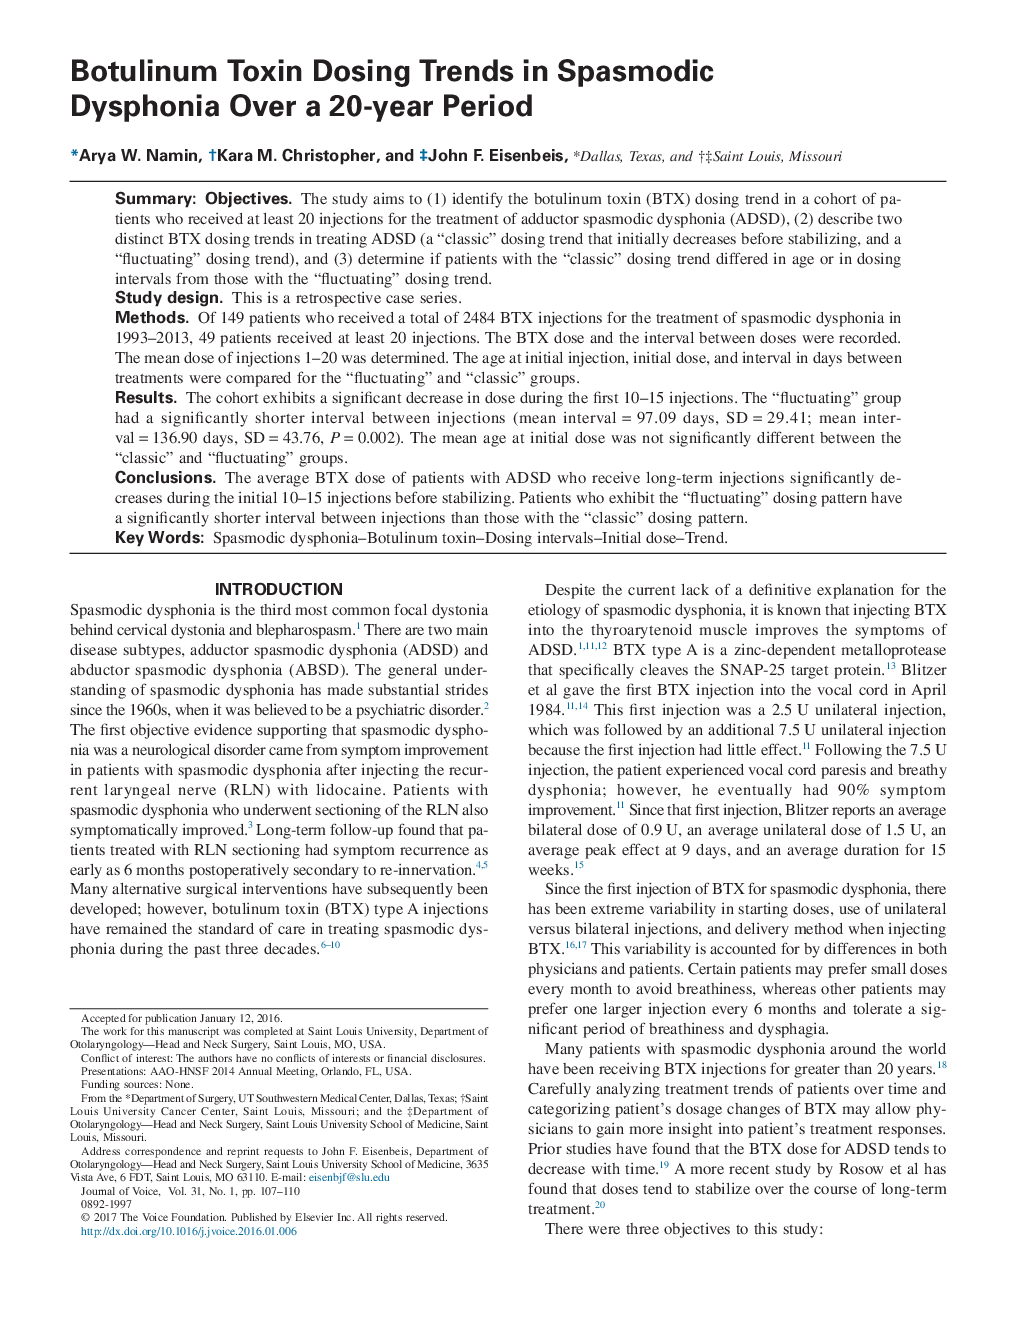 دوز توکسین بوتولینوم در روند دیسفوناس اسپاسمودی در طول یک دوره 20 ساله 